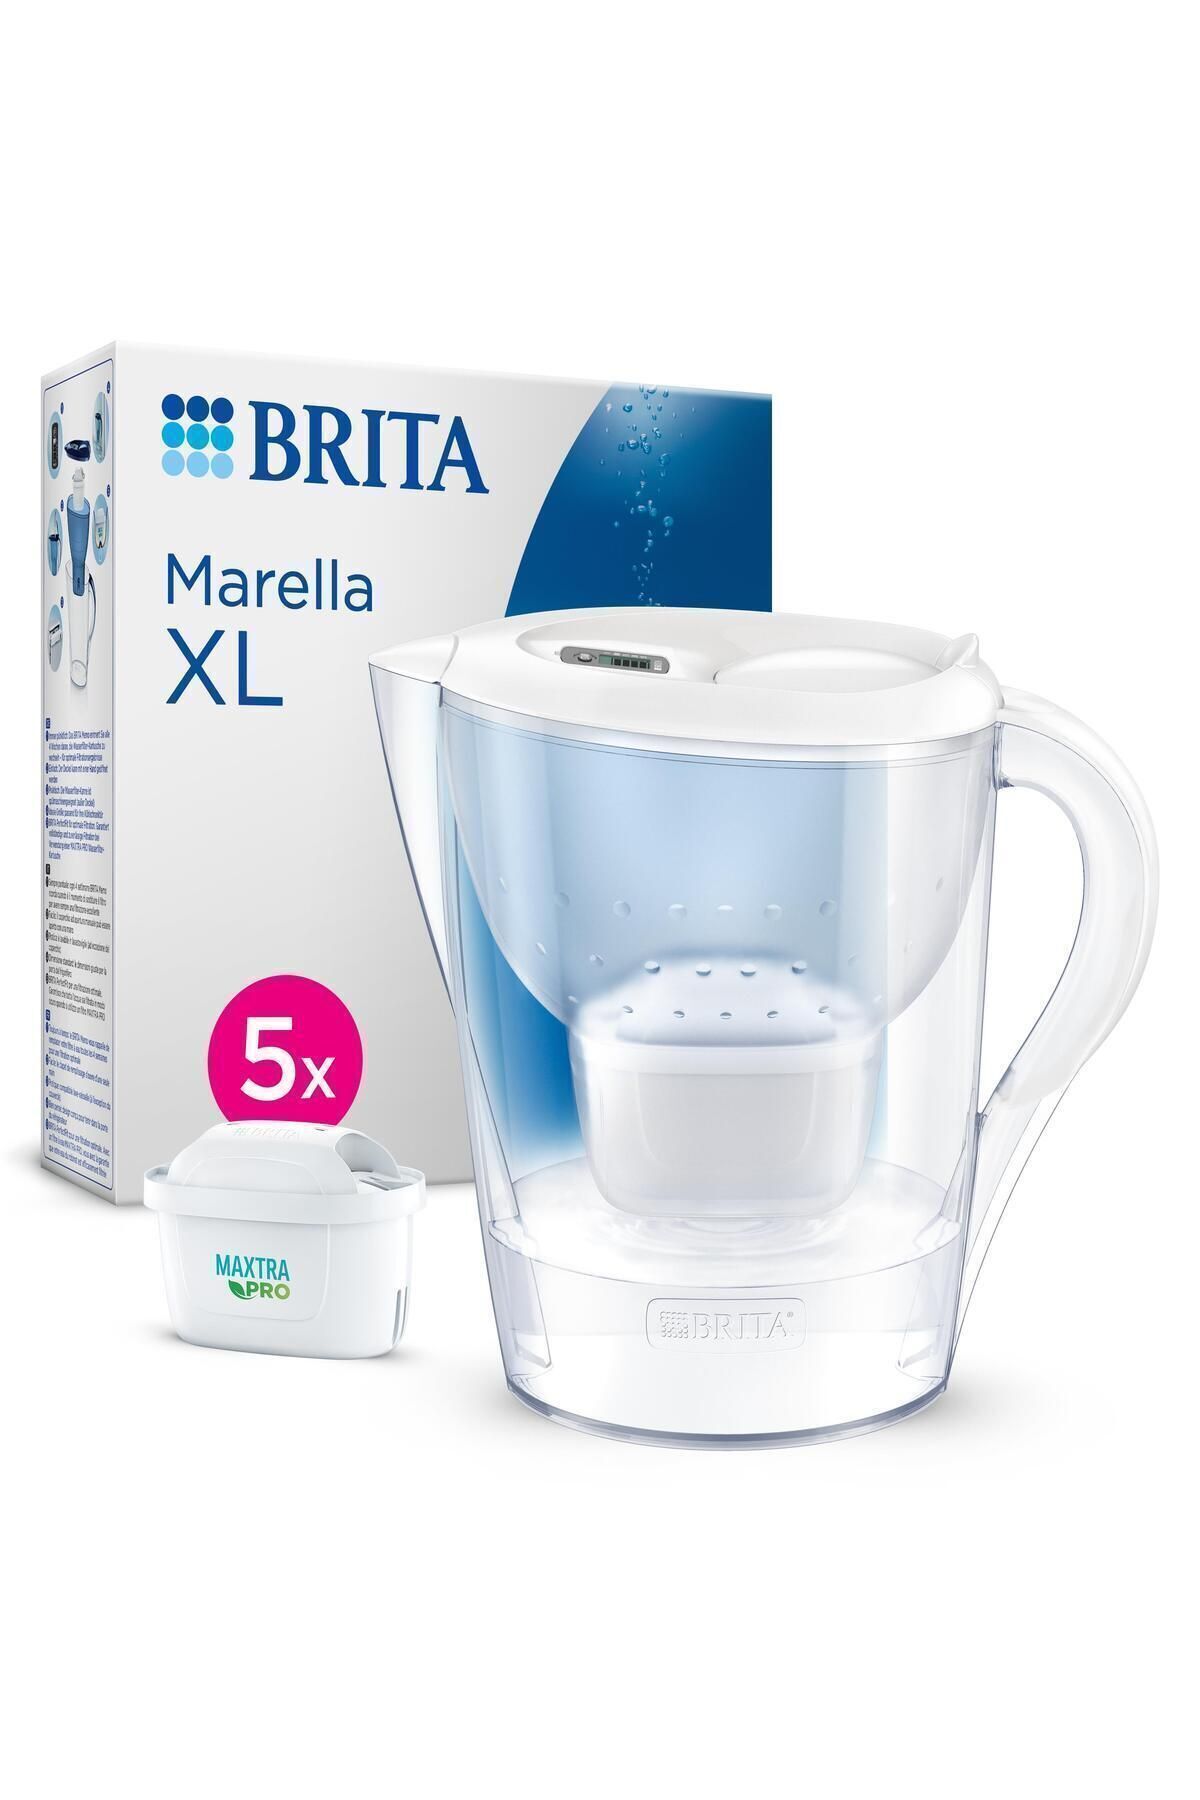 Brita Marella XL 5x MAXTRA PRO ALL-IN-1 Filtreli Su Arıtma Sürahisi – Beyaz (3,5L)